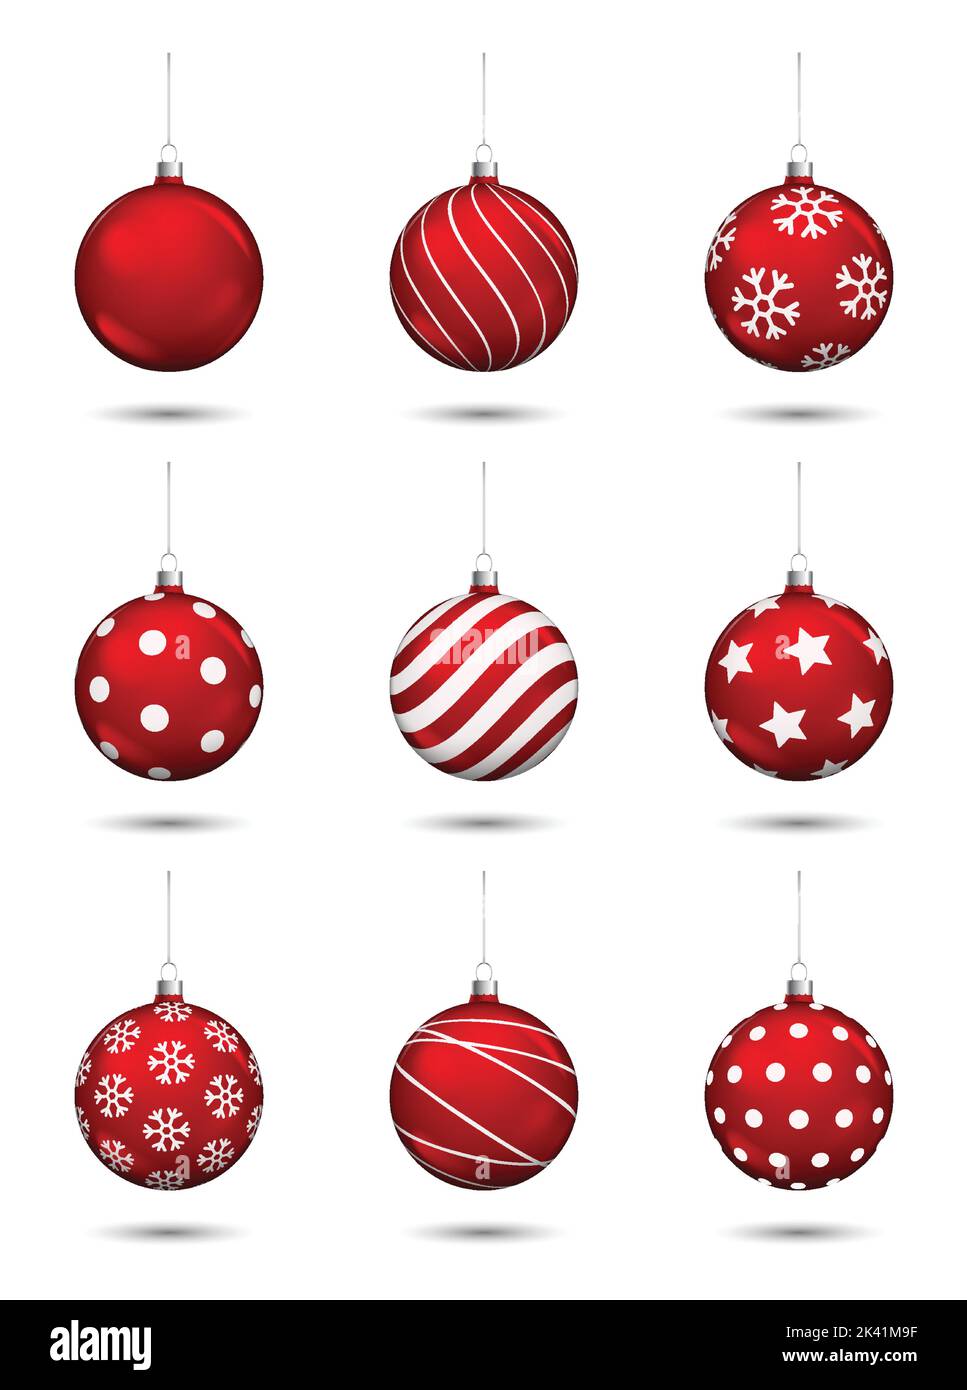 Rote weihnachtskugeln Dekoration isoliert auf weißem Hintergrund. Stock Vektor